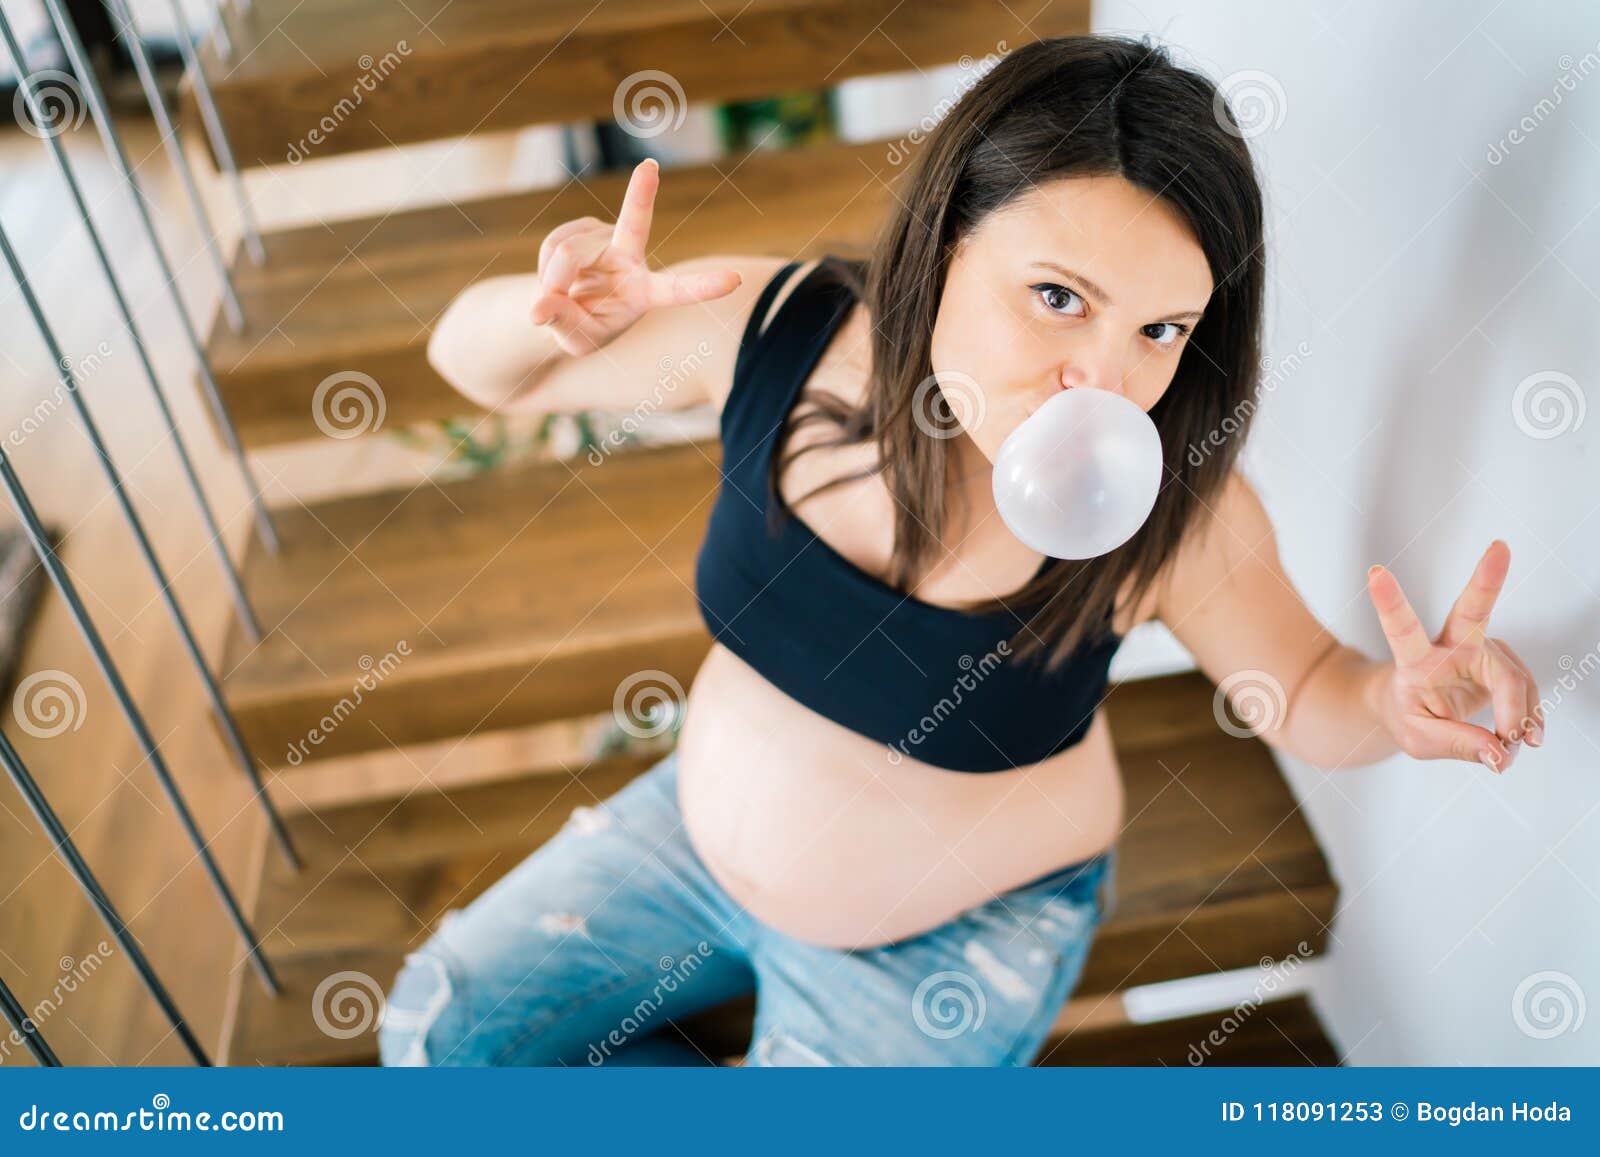 Жвачка беременным. Беременные жвачки. Фотосессия беременных с жевательной резинкой.